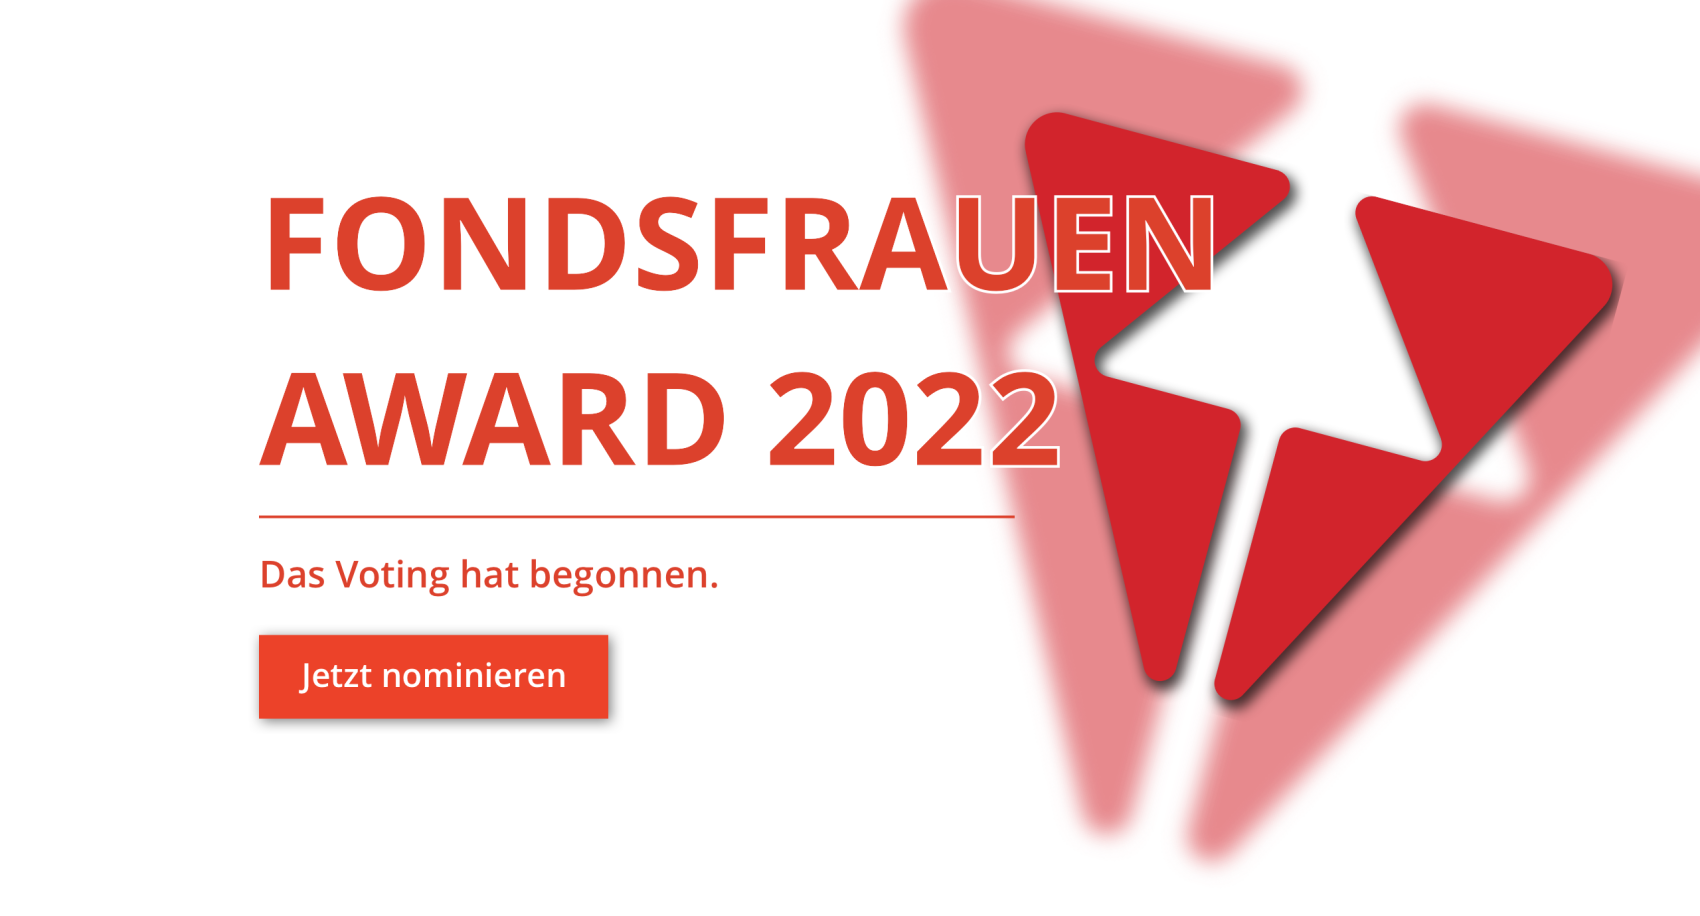 Fondsfrauen Award 2022 - das Voting hat begonnen